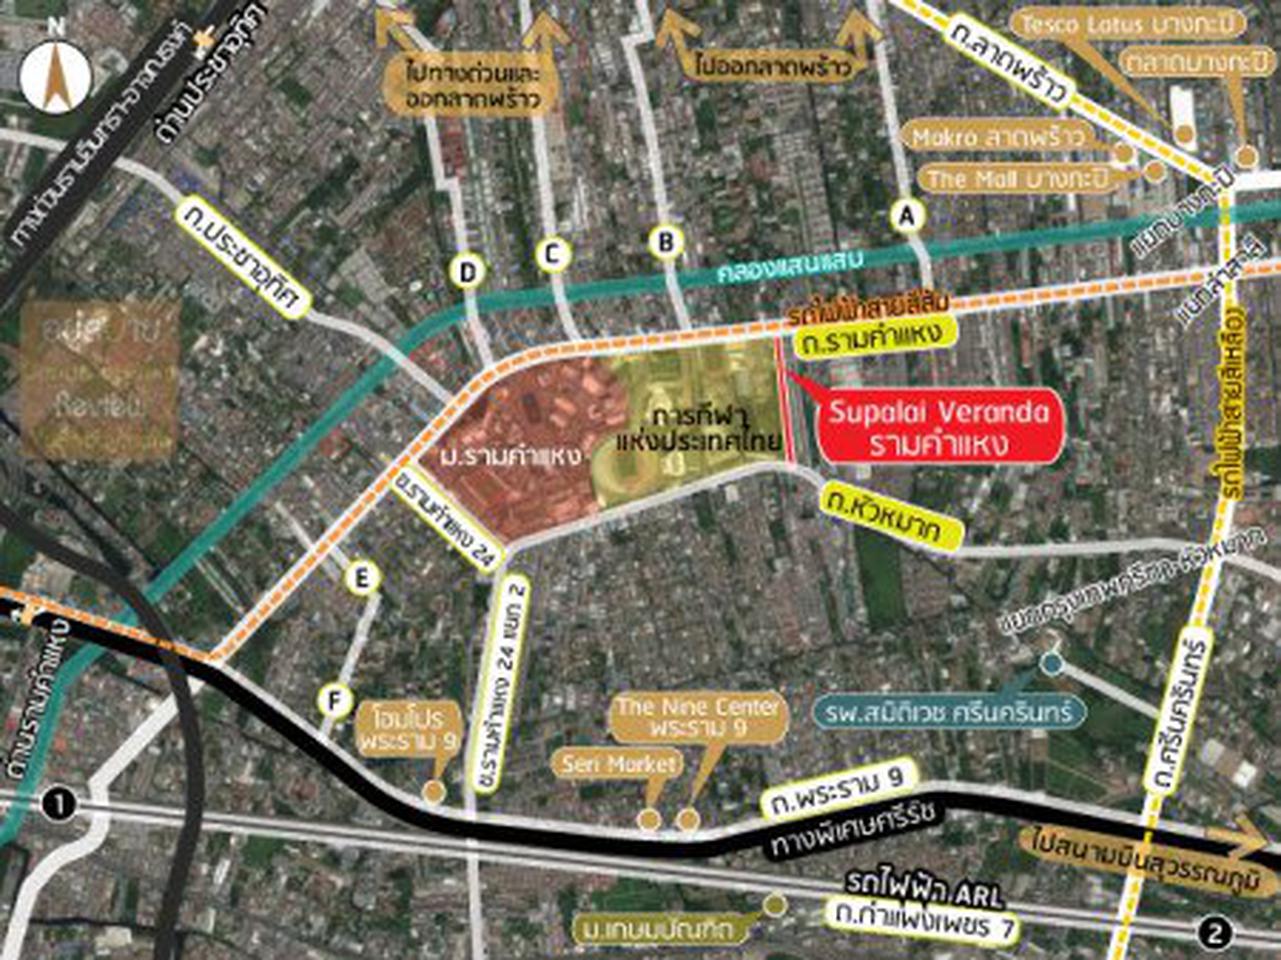 ให้เช่า คอนโด เฟอรนิเจอร์ครบ วิวสนามกีฬารัชมังฯ Supalai Veranda Ramkhamhaeng 42 ตรม. ติด MRT สถานีราชมังคลา รูปเล็กที่ 11